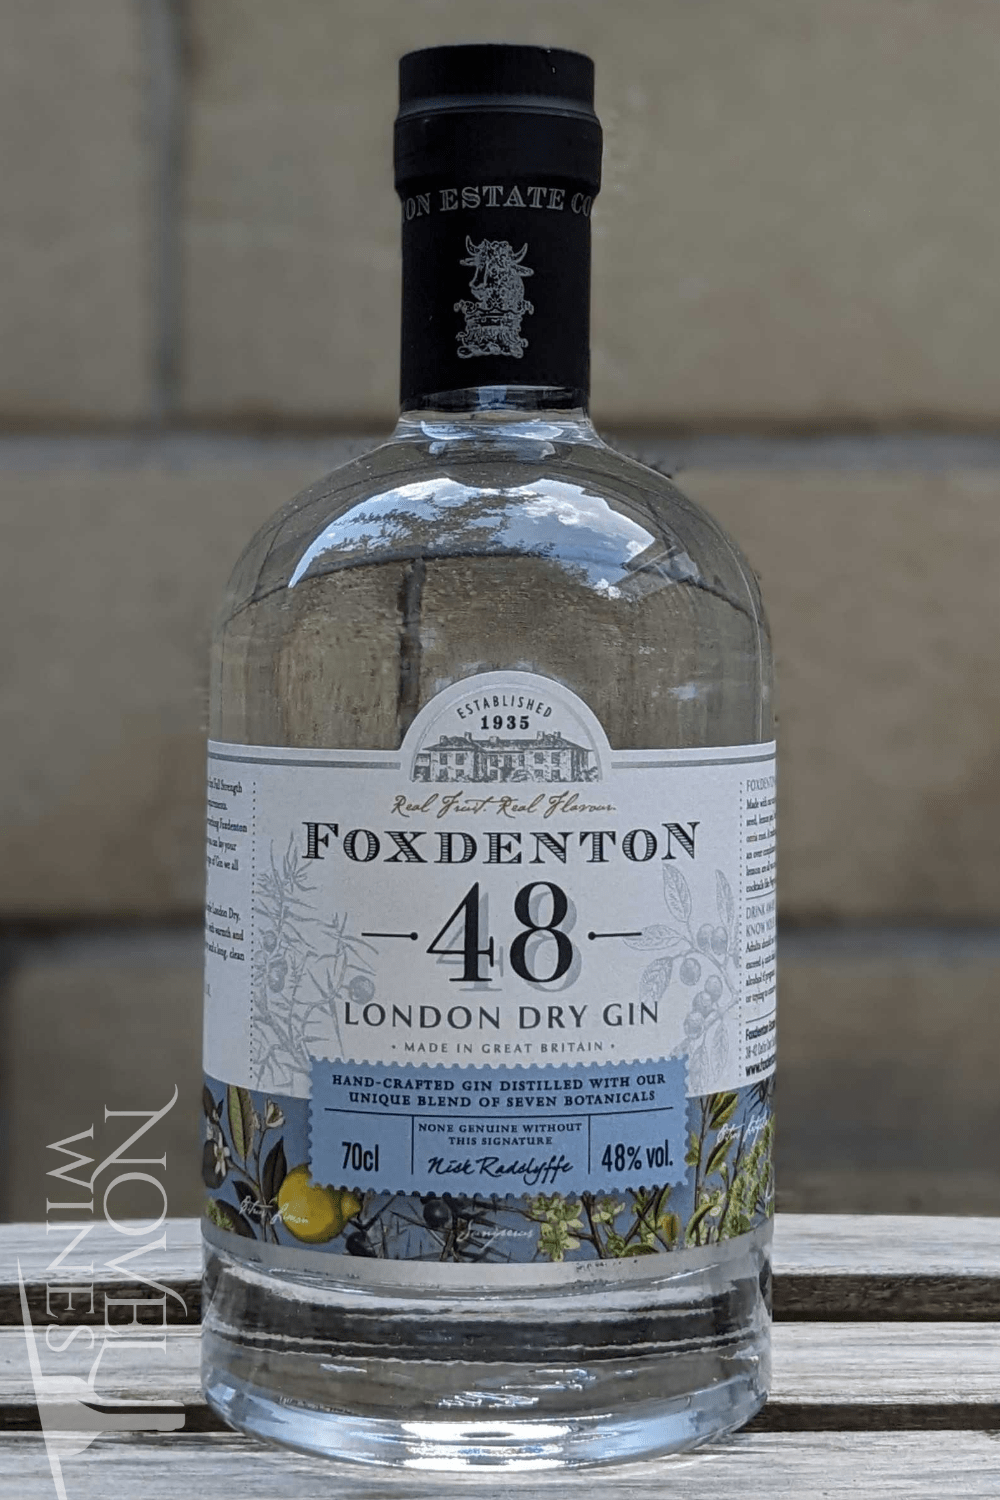 Foxdenton Estate Gin Foxdenton 'The Original 48' London Dry Gin 48.0% abv, England